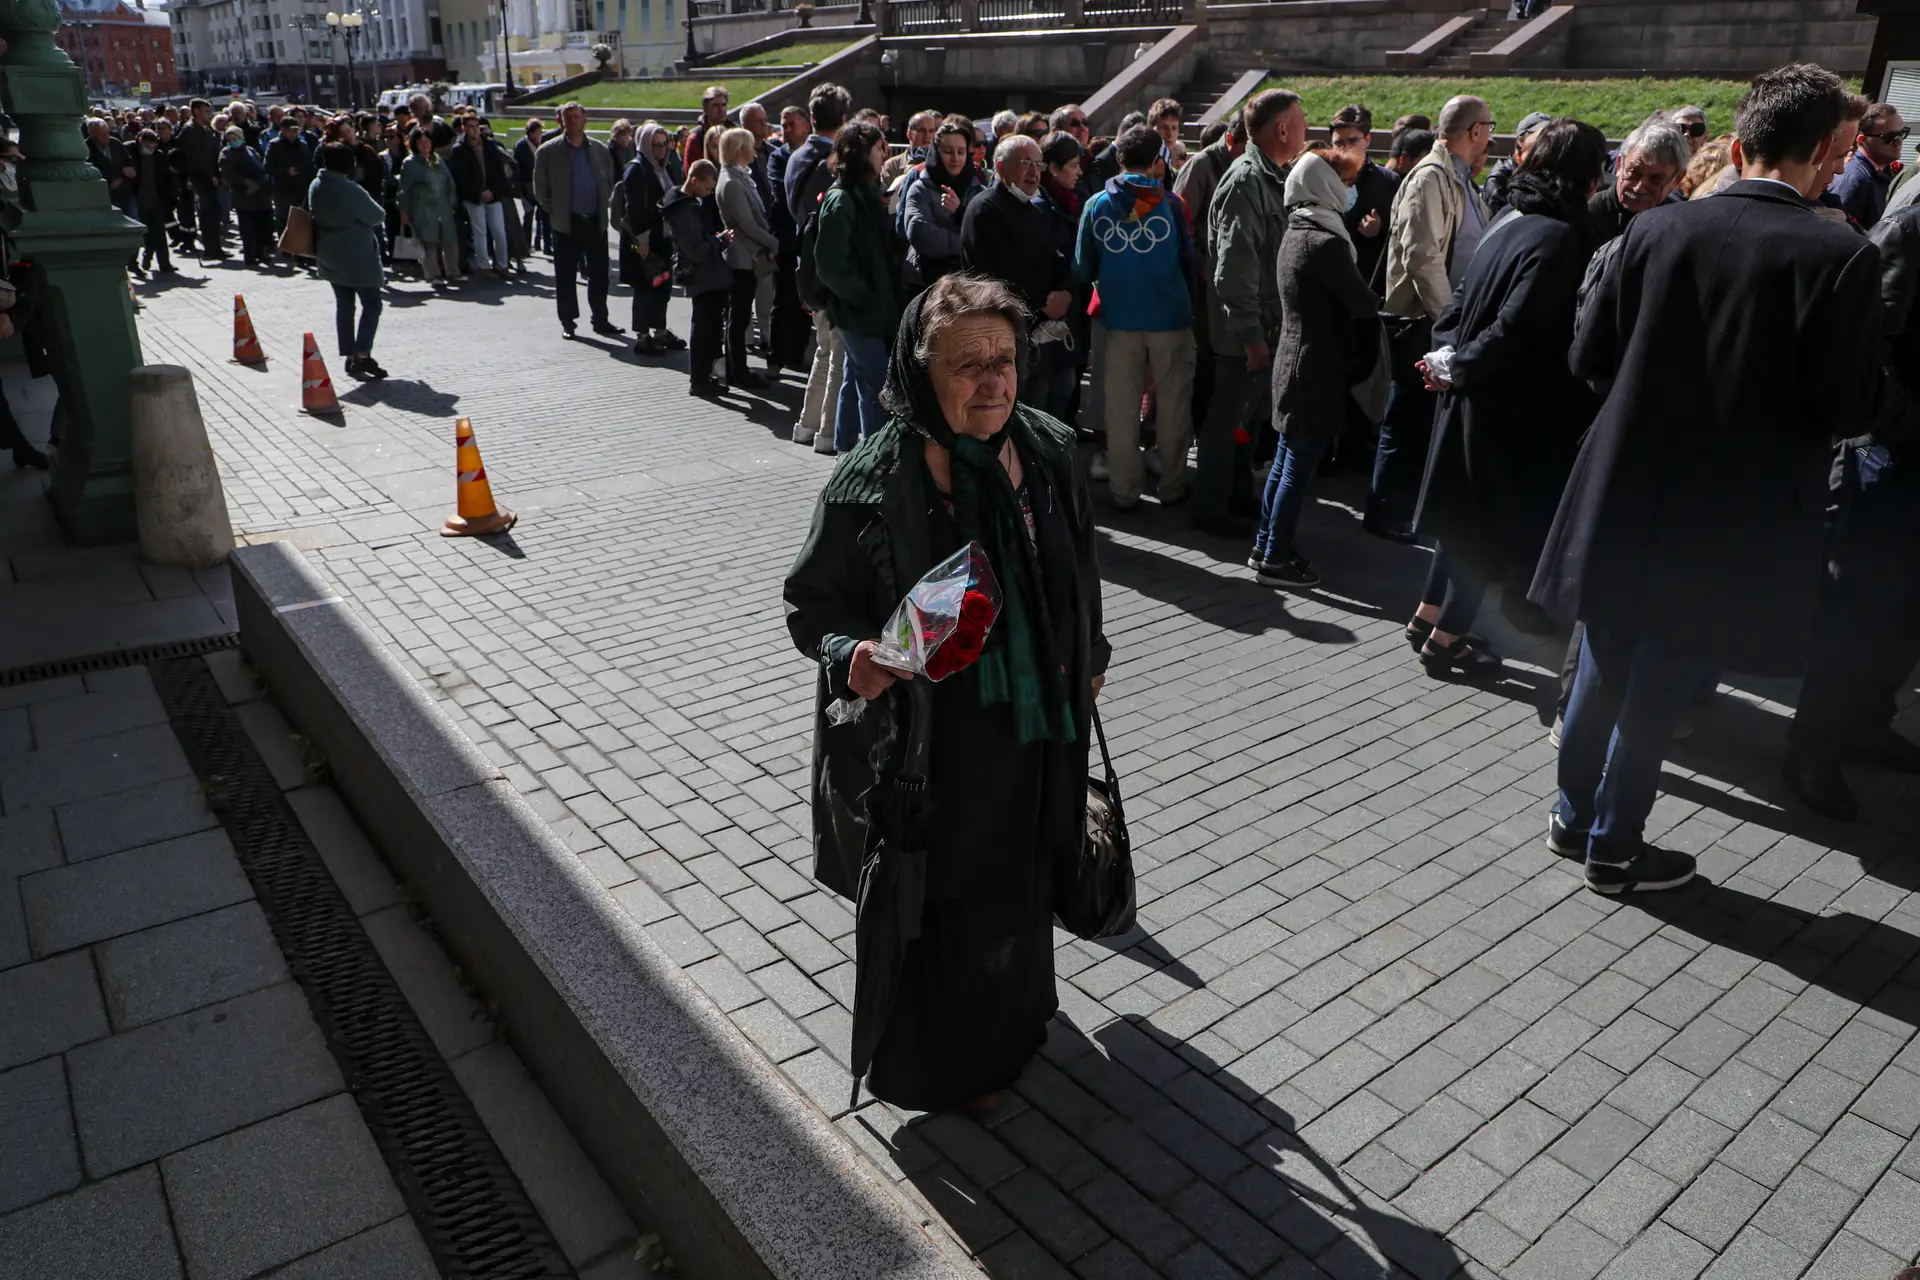 Luto leva milhares a aguardarem em fila para se despedirem de Gorbachov